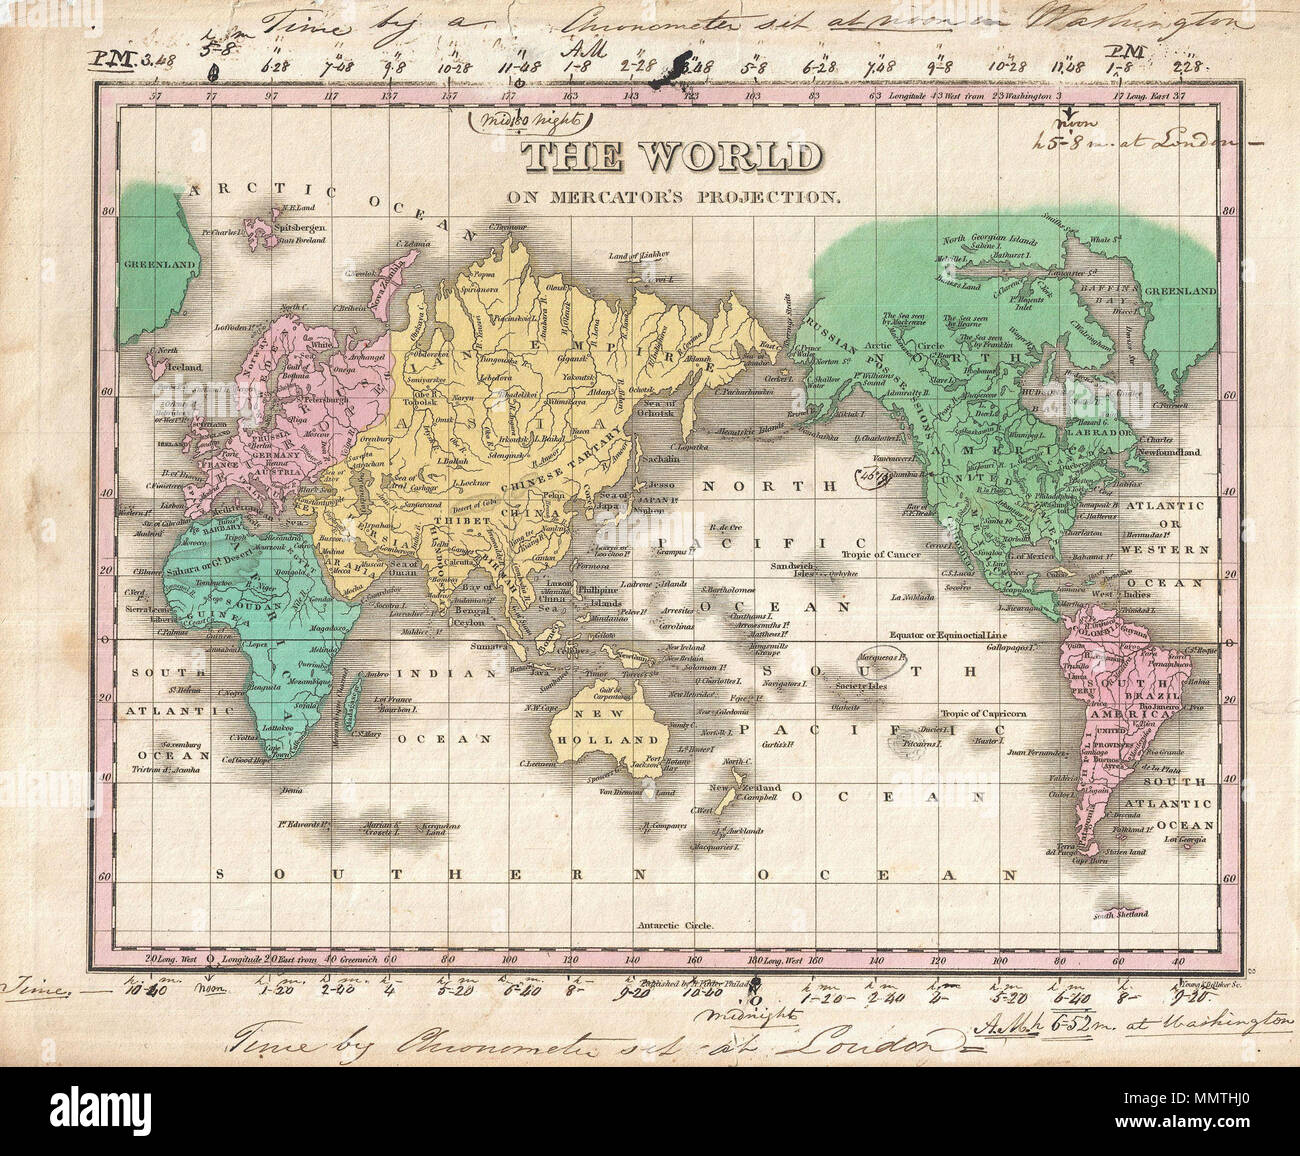 . Englisch: Dies ist Finley ist wünschenswert, 1827 Karte der Welt. Deckt die gesamte Welt auf einer Mercator-projektion. Identifiziert die Wüsten, Flüsse, viele Länder, und zahlreiche Städte. Die Farbe je nach Kontinent mit Australien (New Holland) nach Asien angefügte codiert. Die Antarktis nicht zeigen, aber South Shetland finden Sie nördlich des Polarkreises. Der ursprüngliche Eigentümer hat Manuskript Anmerkungen hinzugefügt, um die oberen und unteren Ränder (kurz in die Karte im oberen Bereich). Diese Annotation, in einem flüssigen Skript aus dem 19. Jahrhundert, zeigt Zeitzonen aus Washington (oberer Rand) und von London Stockfoto